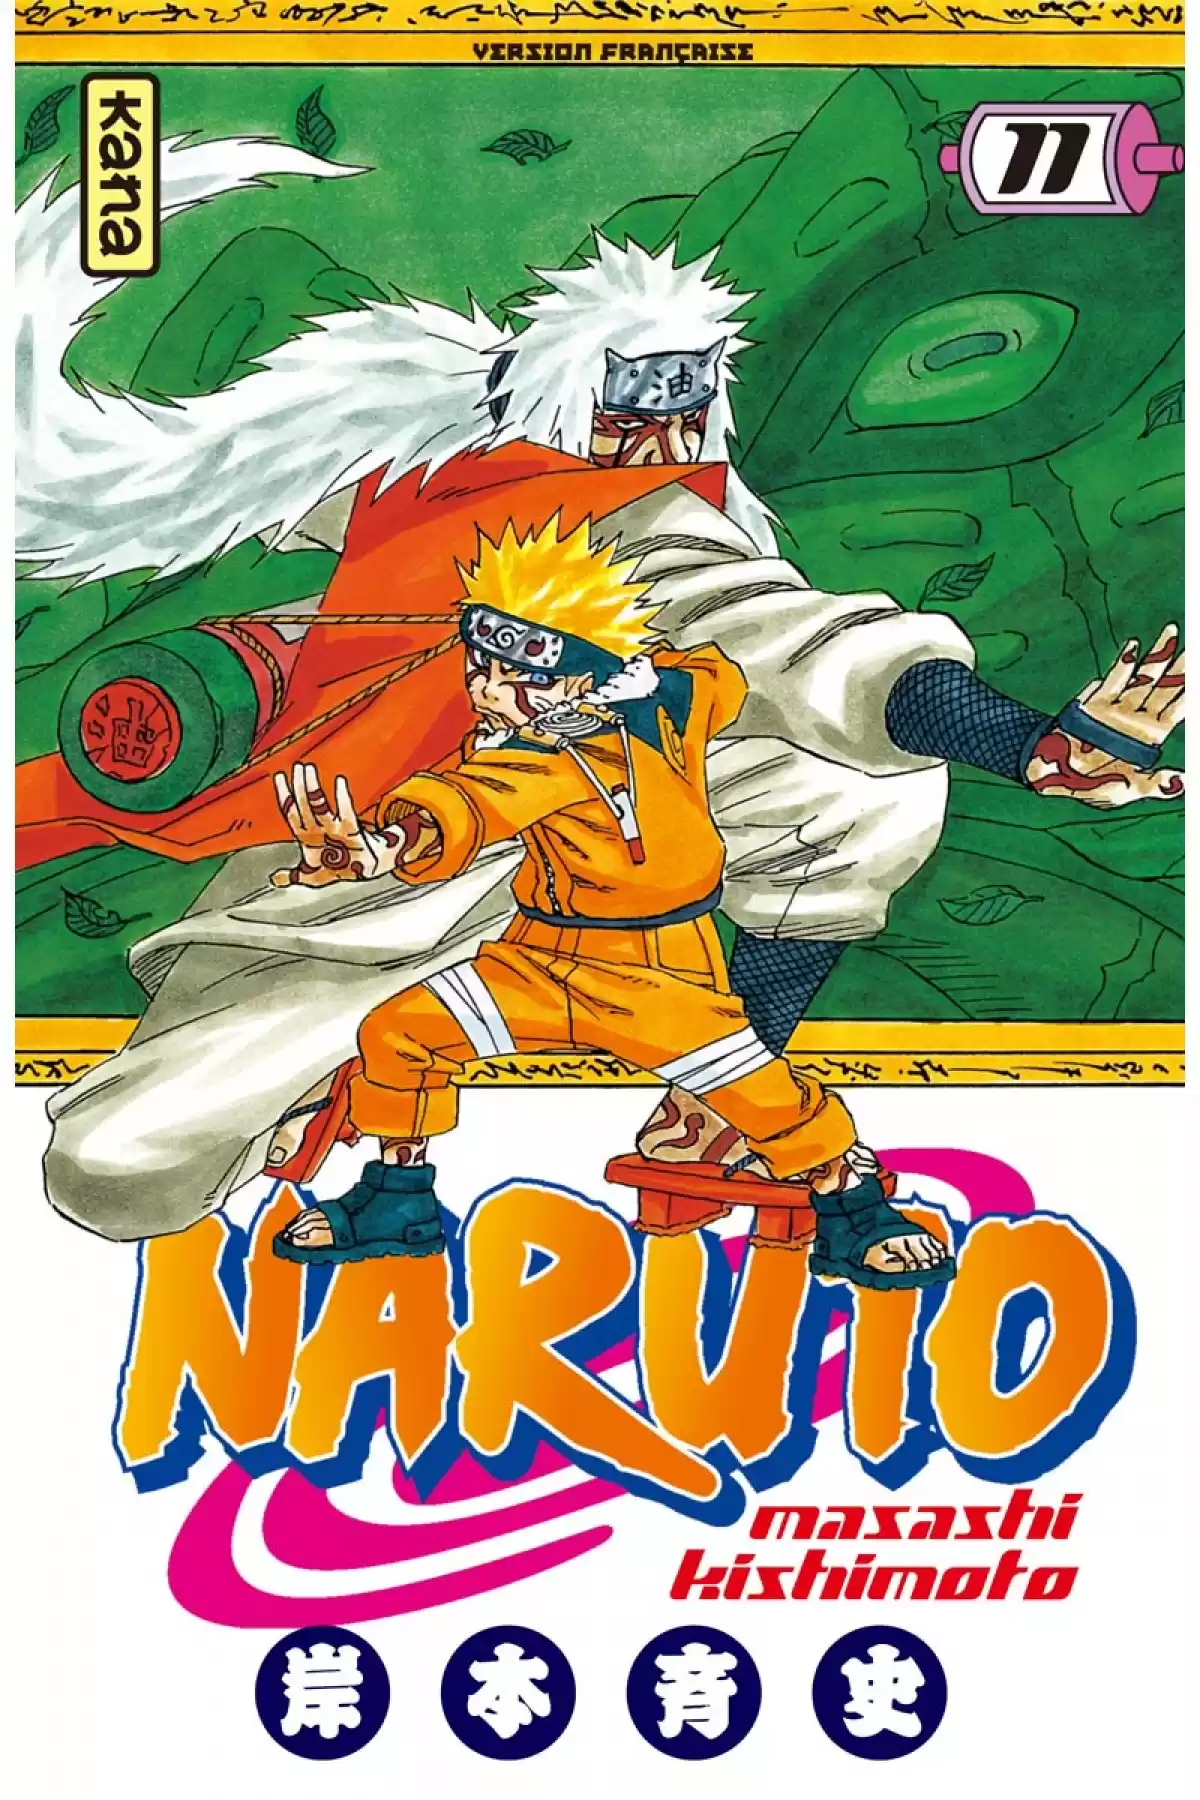 Naruto Volume 11 page 1